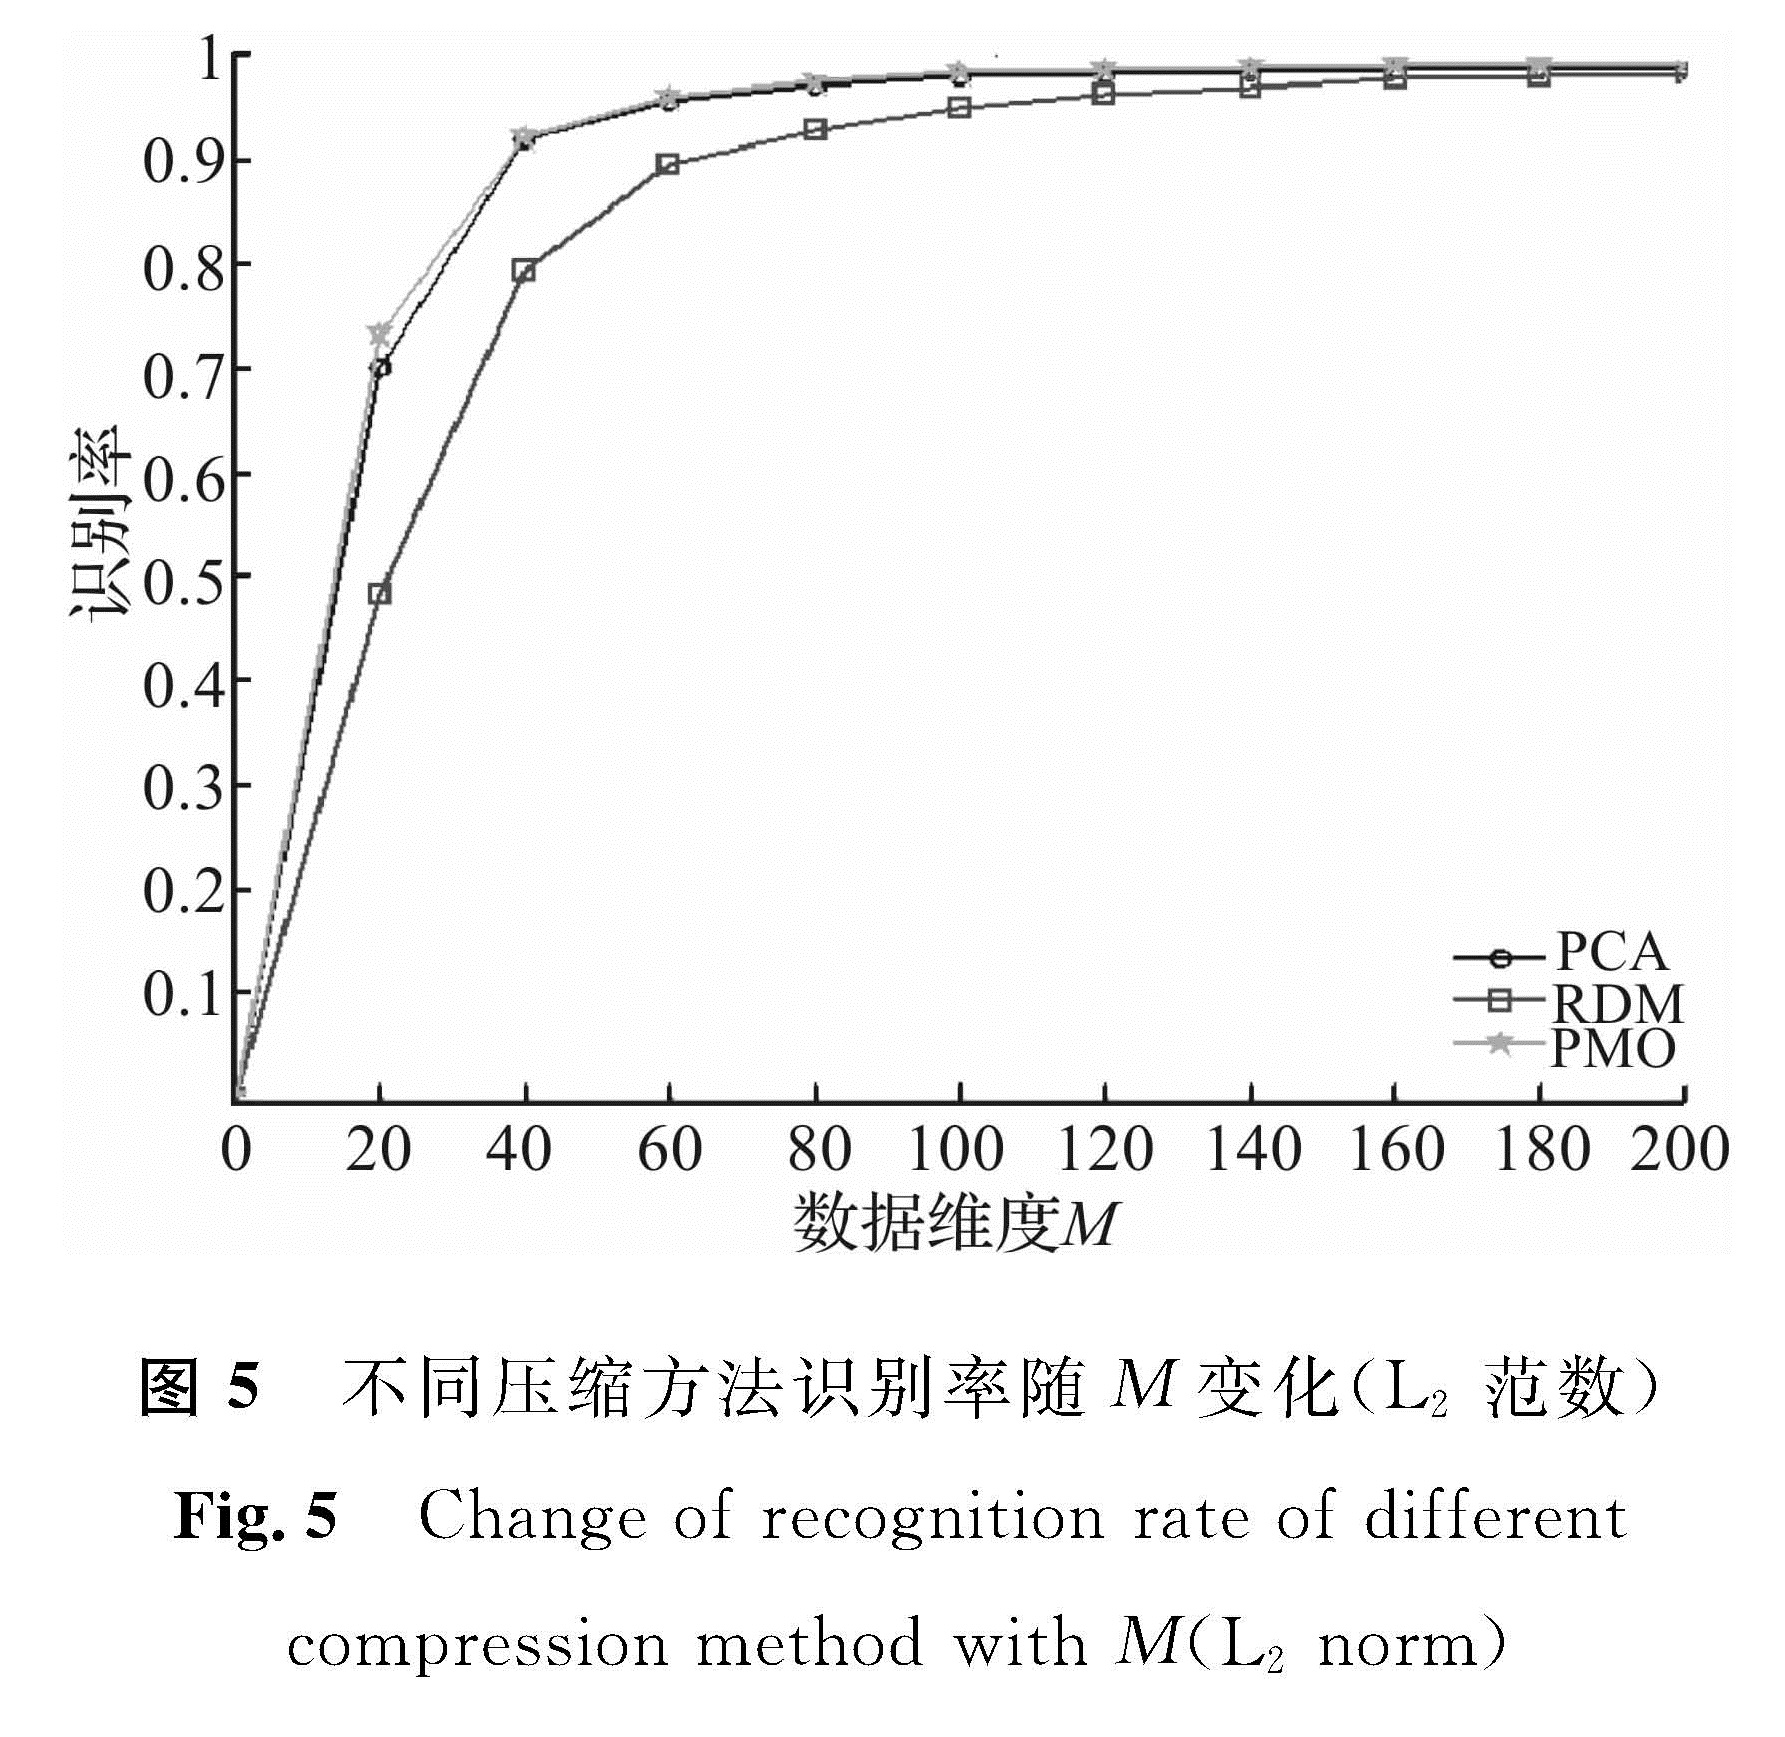 图5 不同压缩方法识别率随M变化(L2范数)<br/>Fig.5 Change of recognition rate of differentcompression method with M(L2 norm)